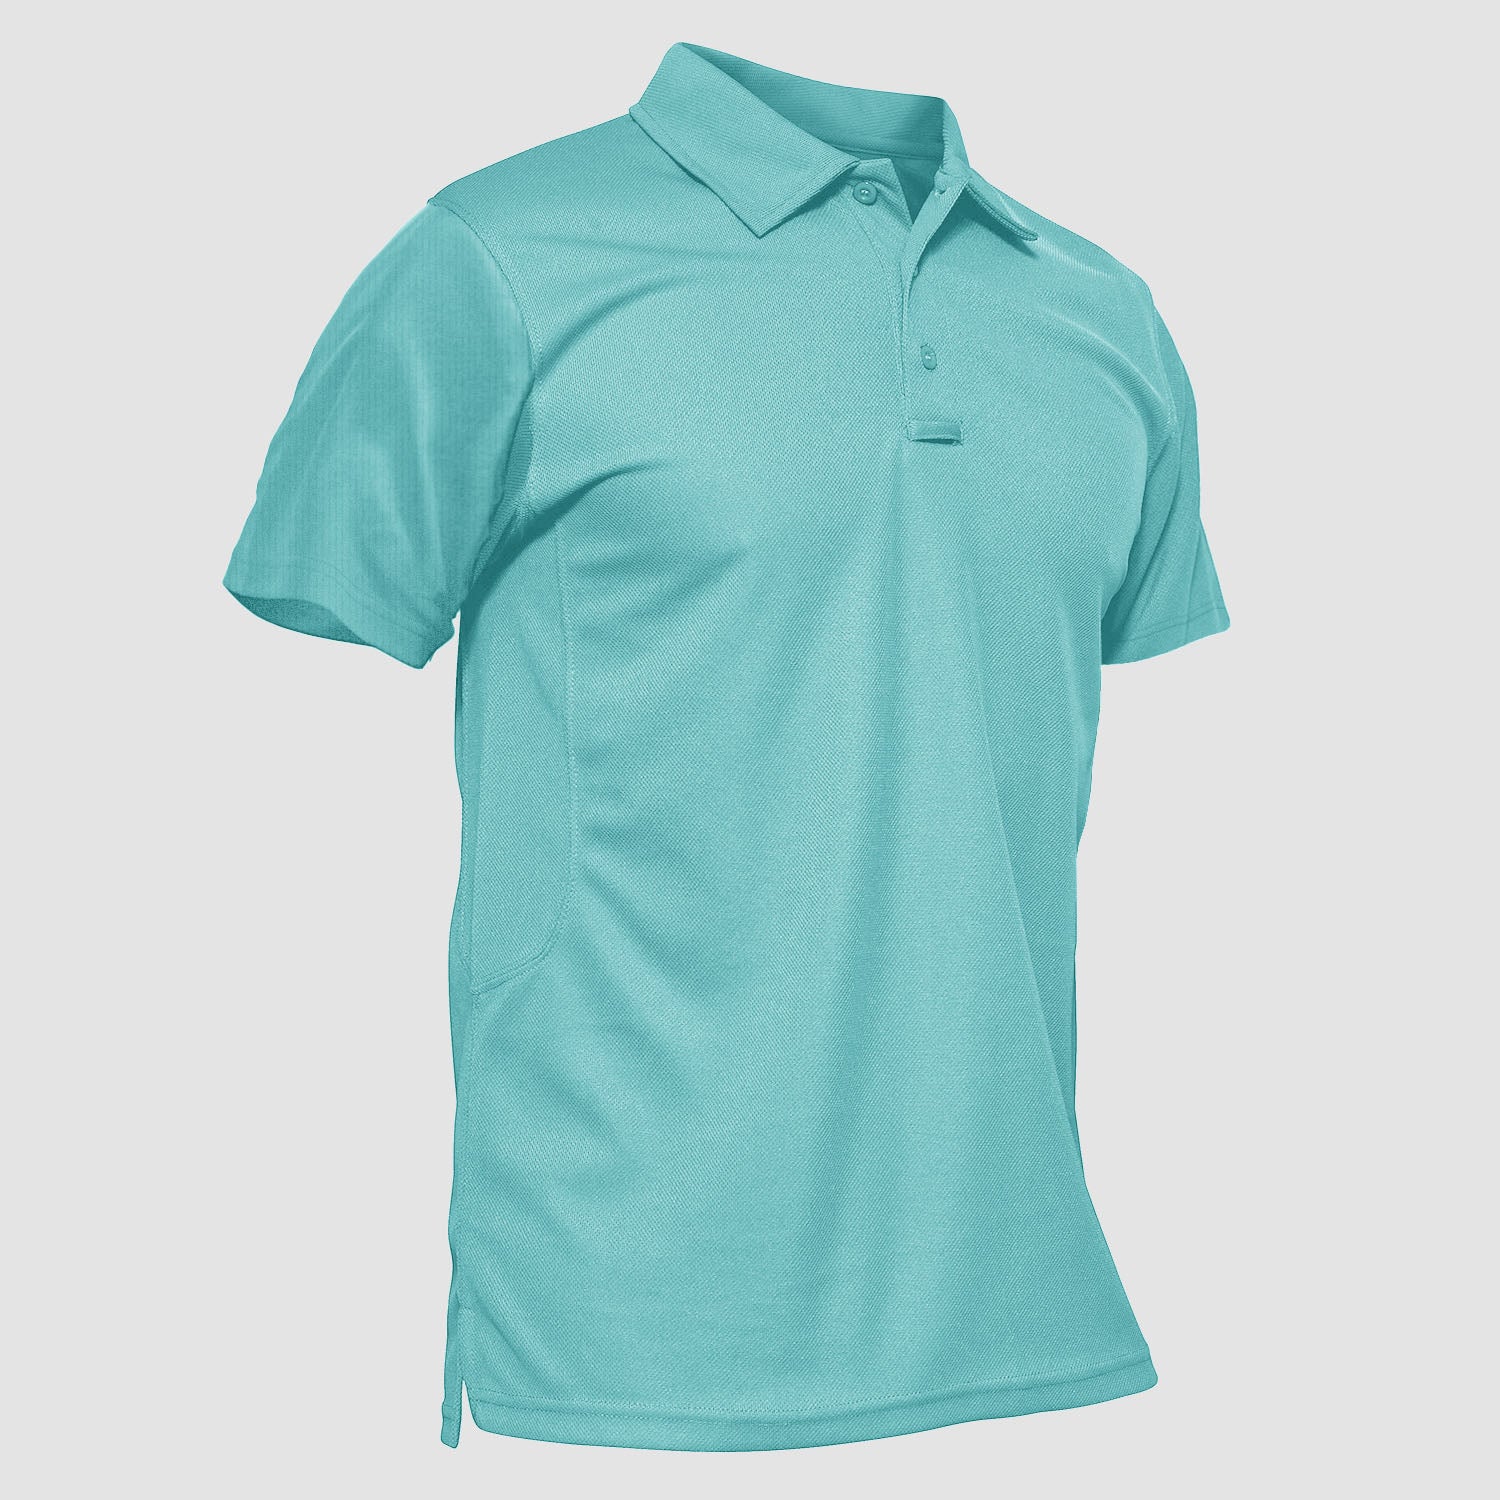 MAGCOMSEN Men's Polo Shirts Short Sleeve Cotton Pique, 45% OFF